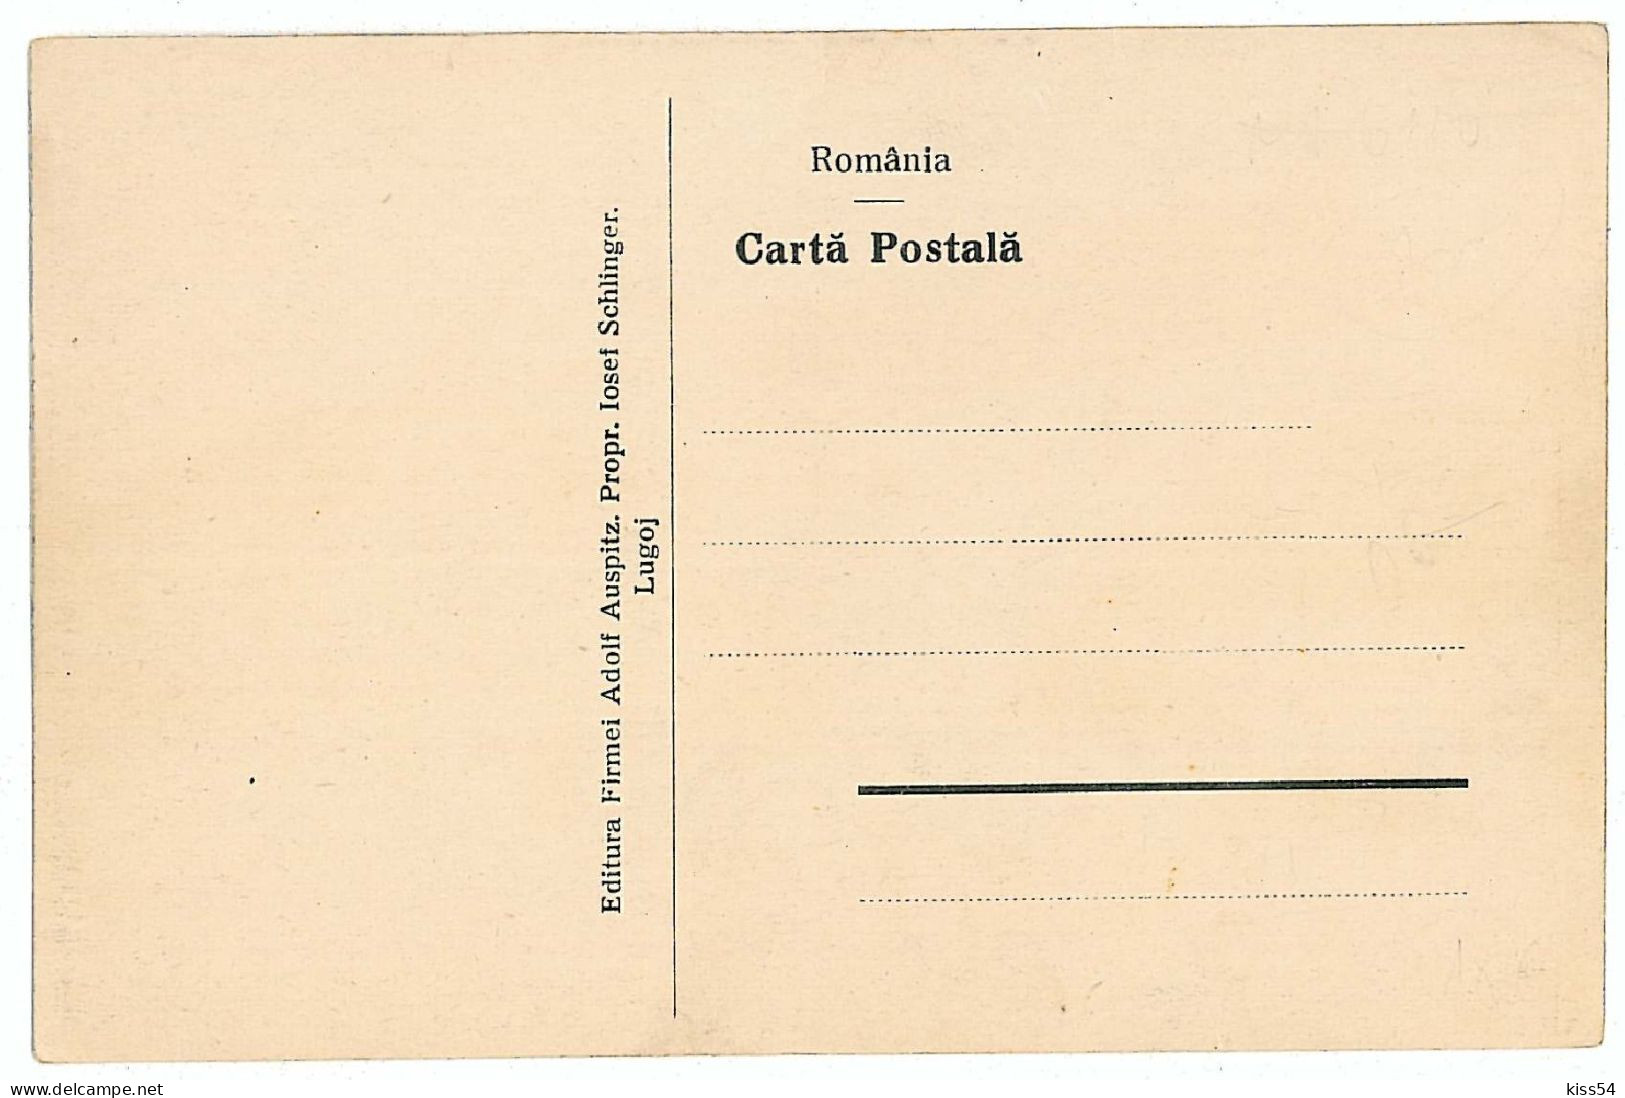 RO 86 - 705 LUGOJ, Timis, Romania, Hall, Boutiques, Stalls - Old Postcard - Unused - Roumanie